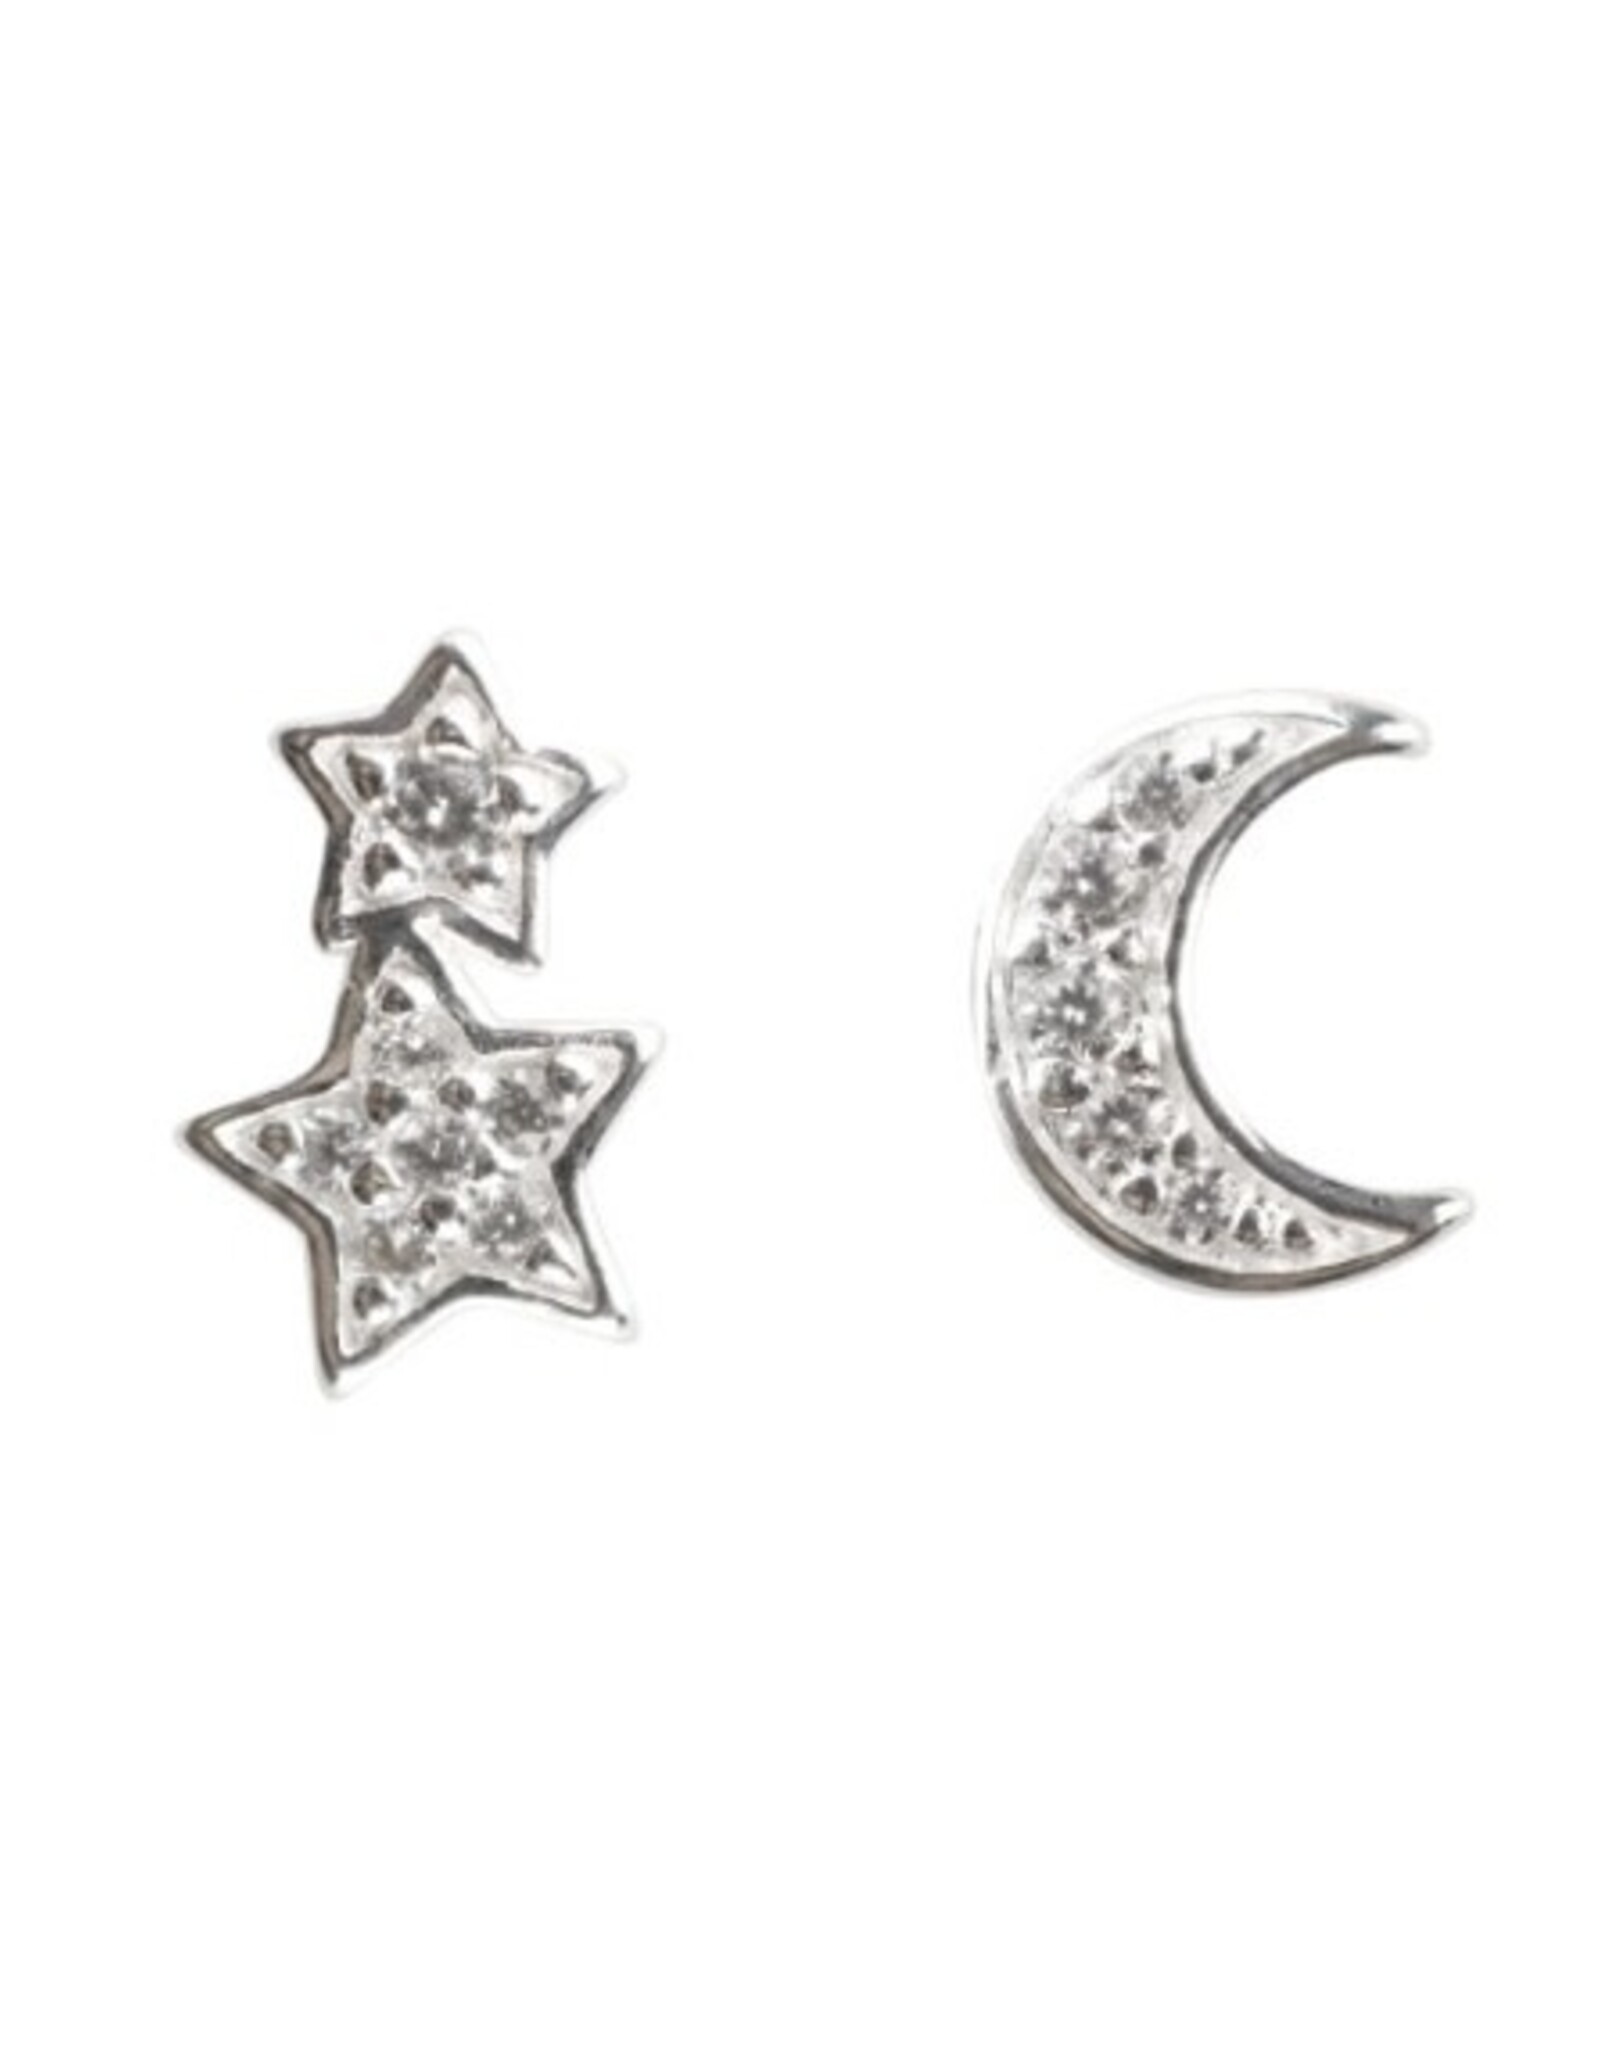 Kit Heath TWIN STAR CRESCENT MOON STUD EARRING - sterling silver